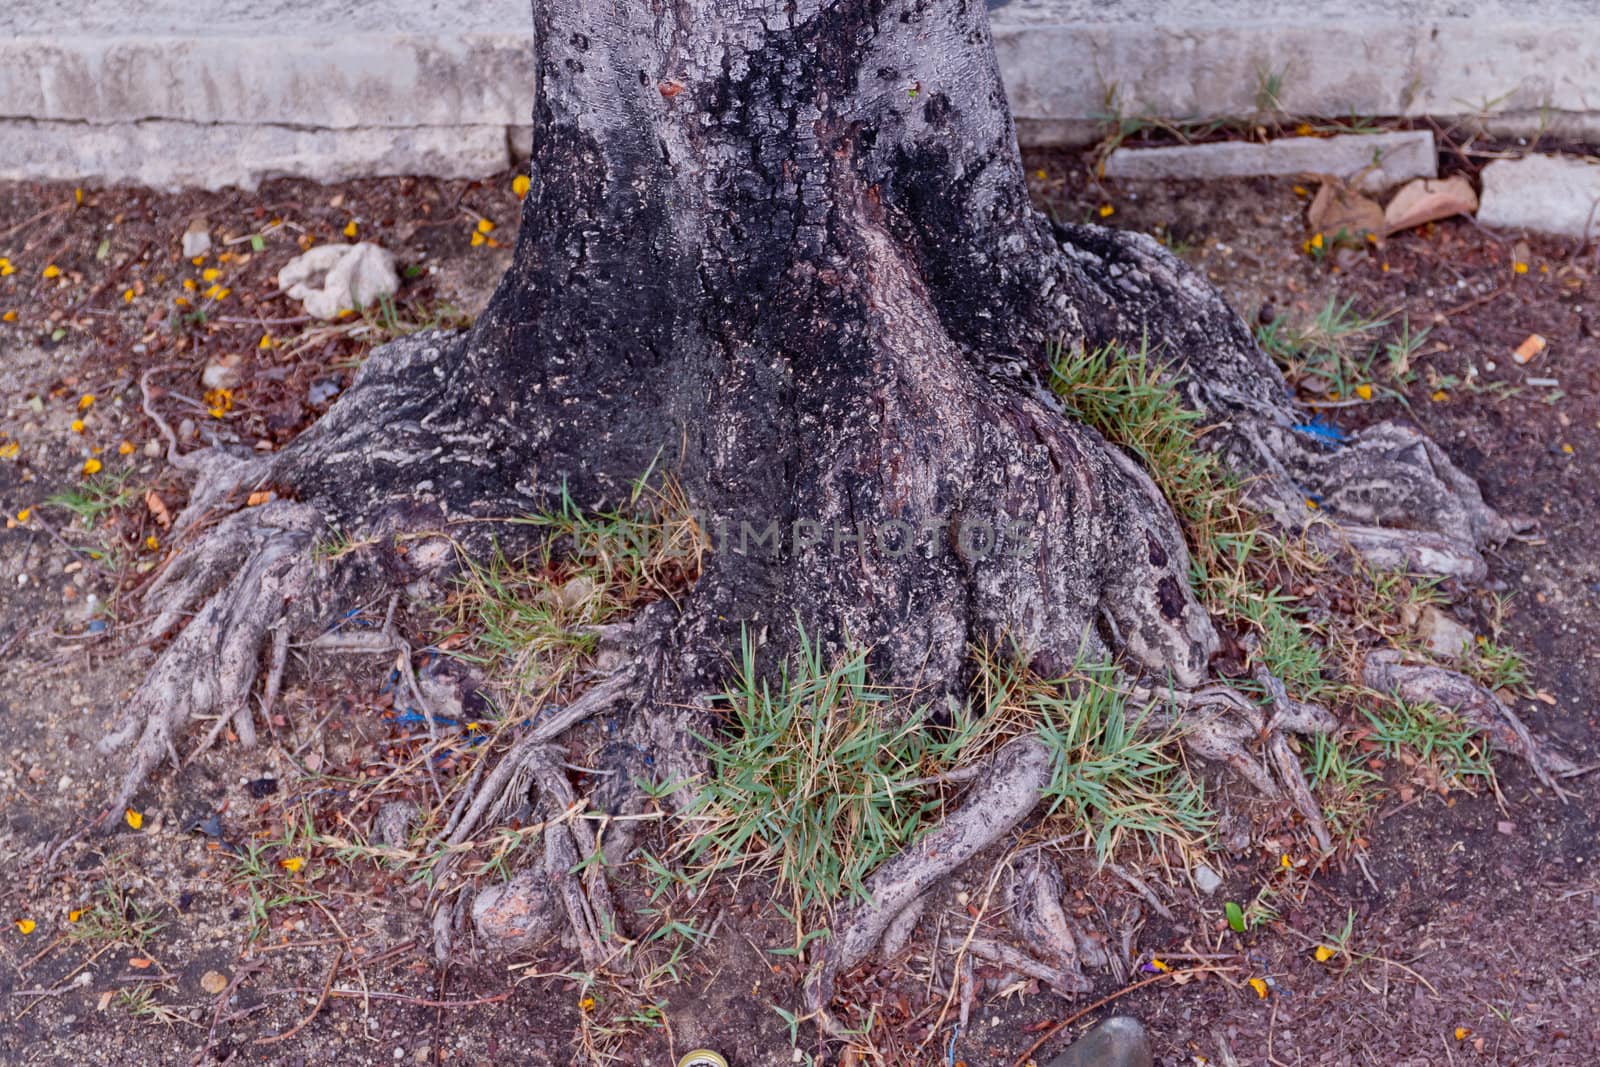 Tree bark, dry parts of the tree.